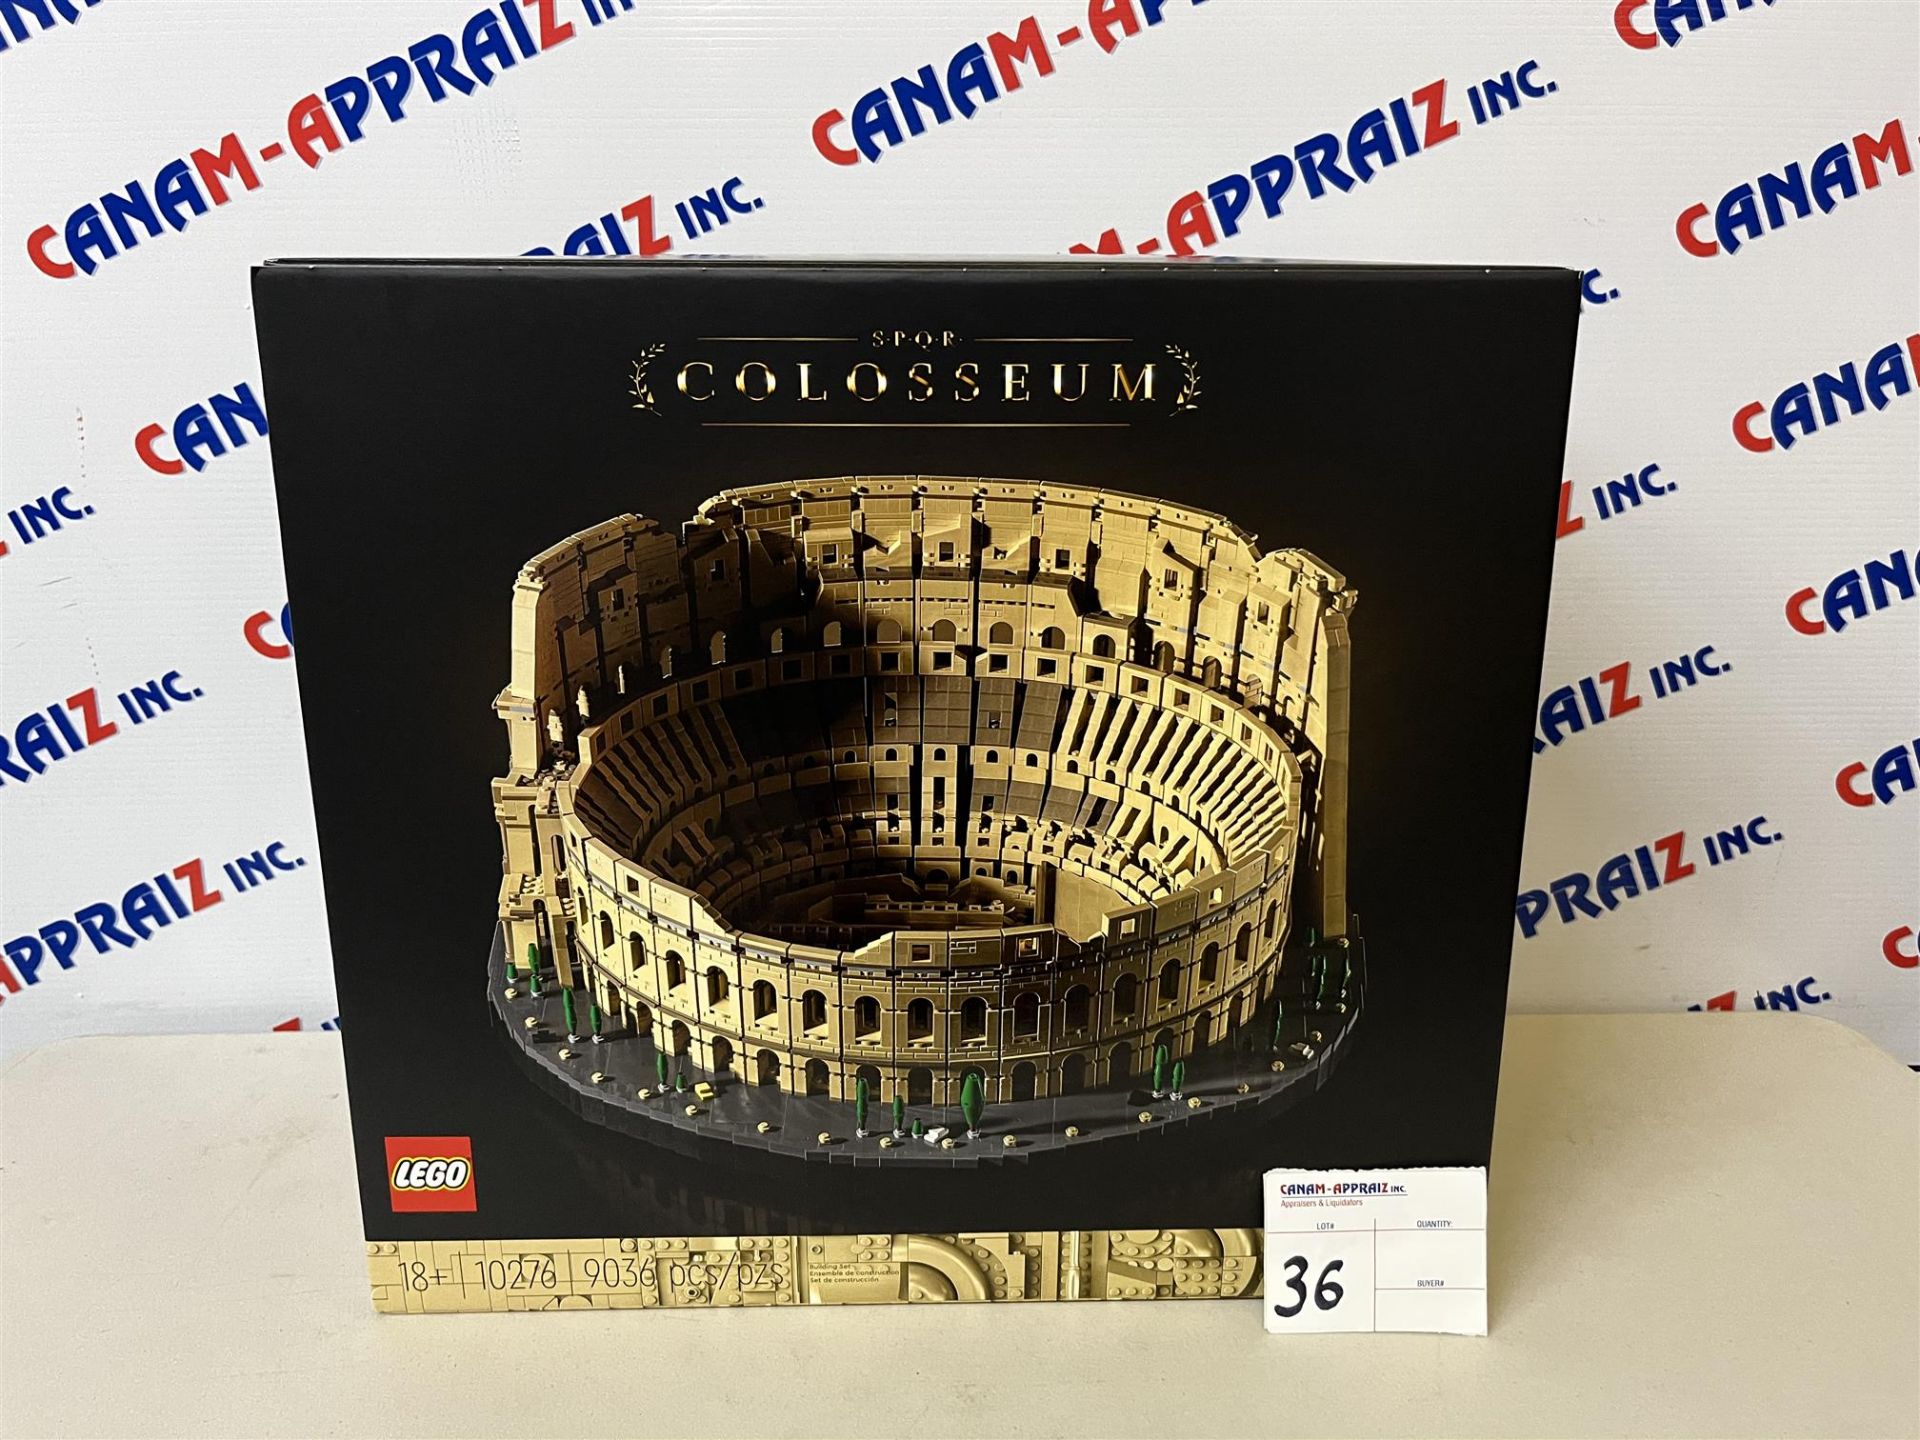 LEGO - 10276, 9036 pcs - Colosseum